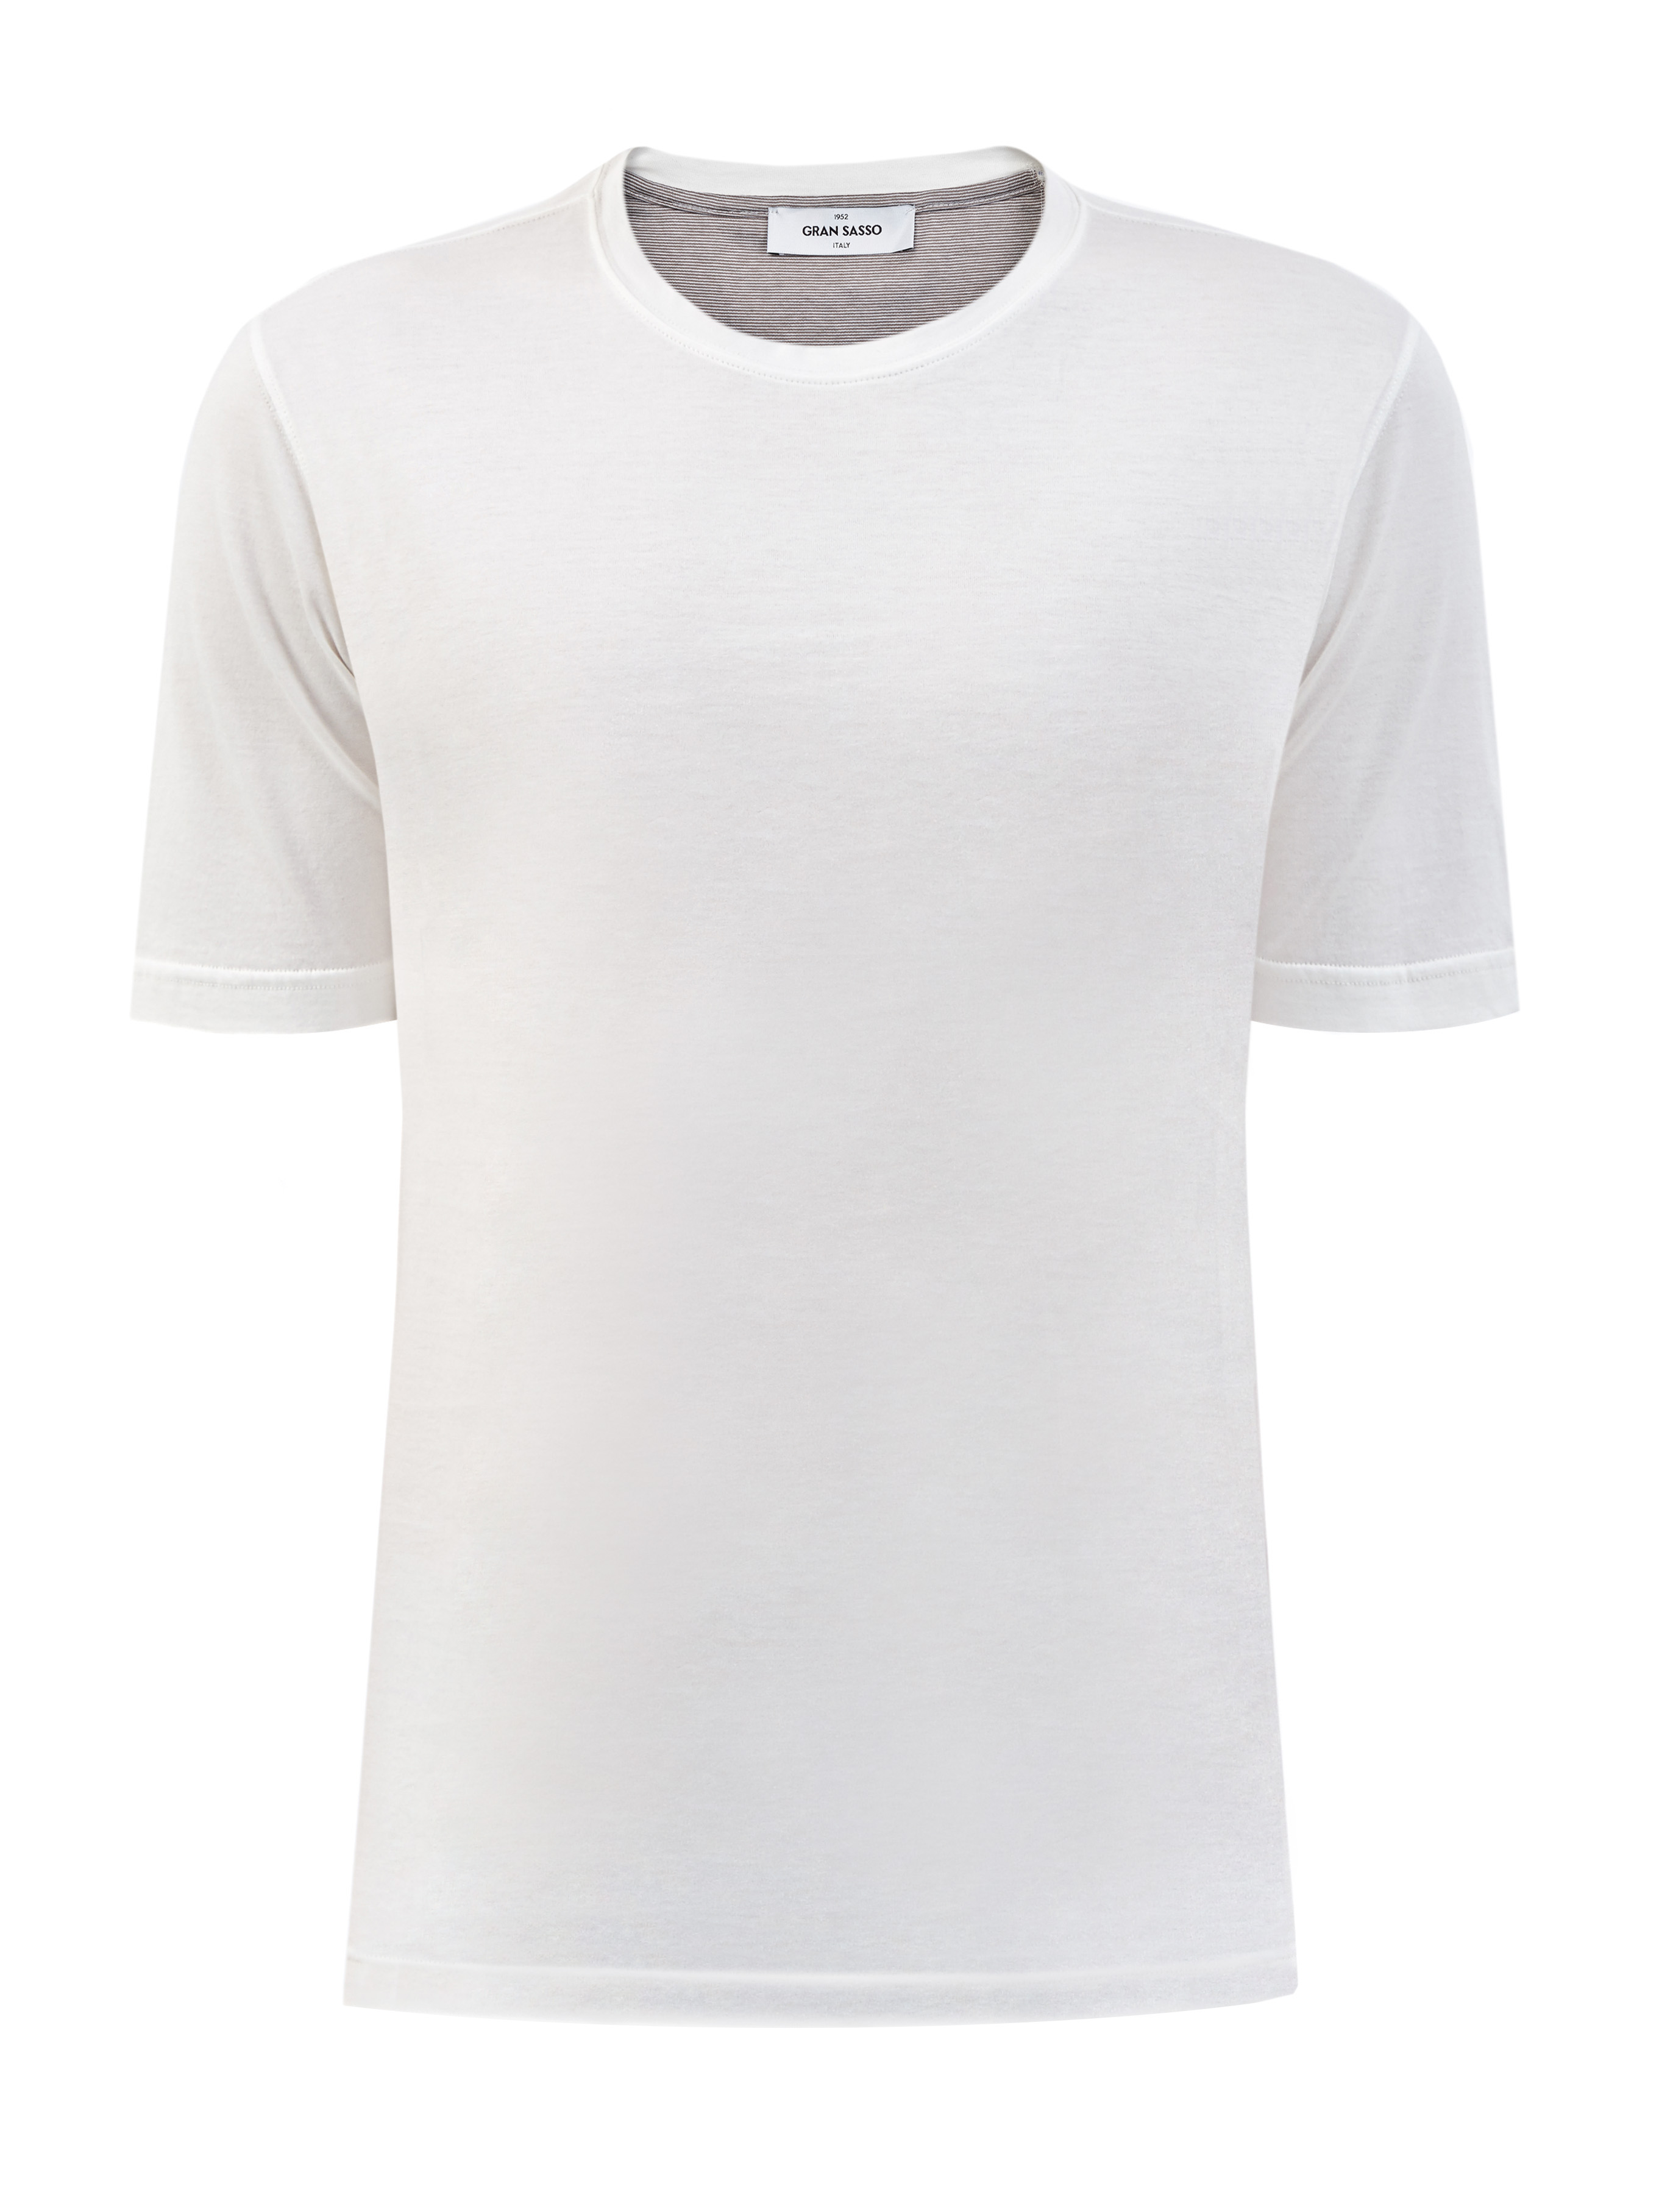 Базовая белая футболка из гладкого хлопка джерси GRAN SASSO, цвет белый, размер 54;56;58;48 - фото 1